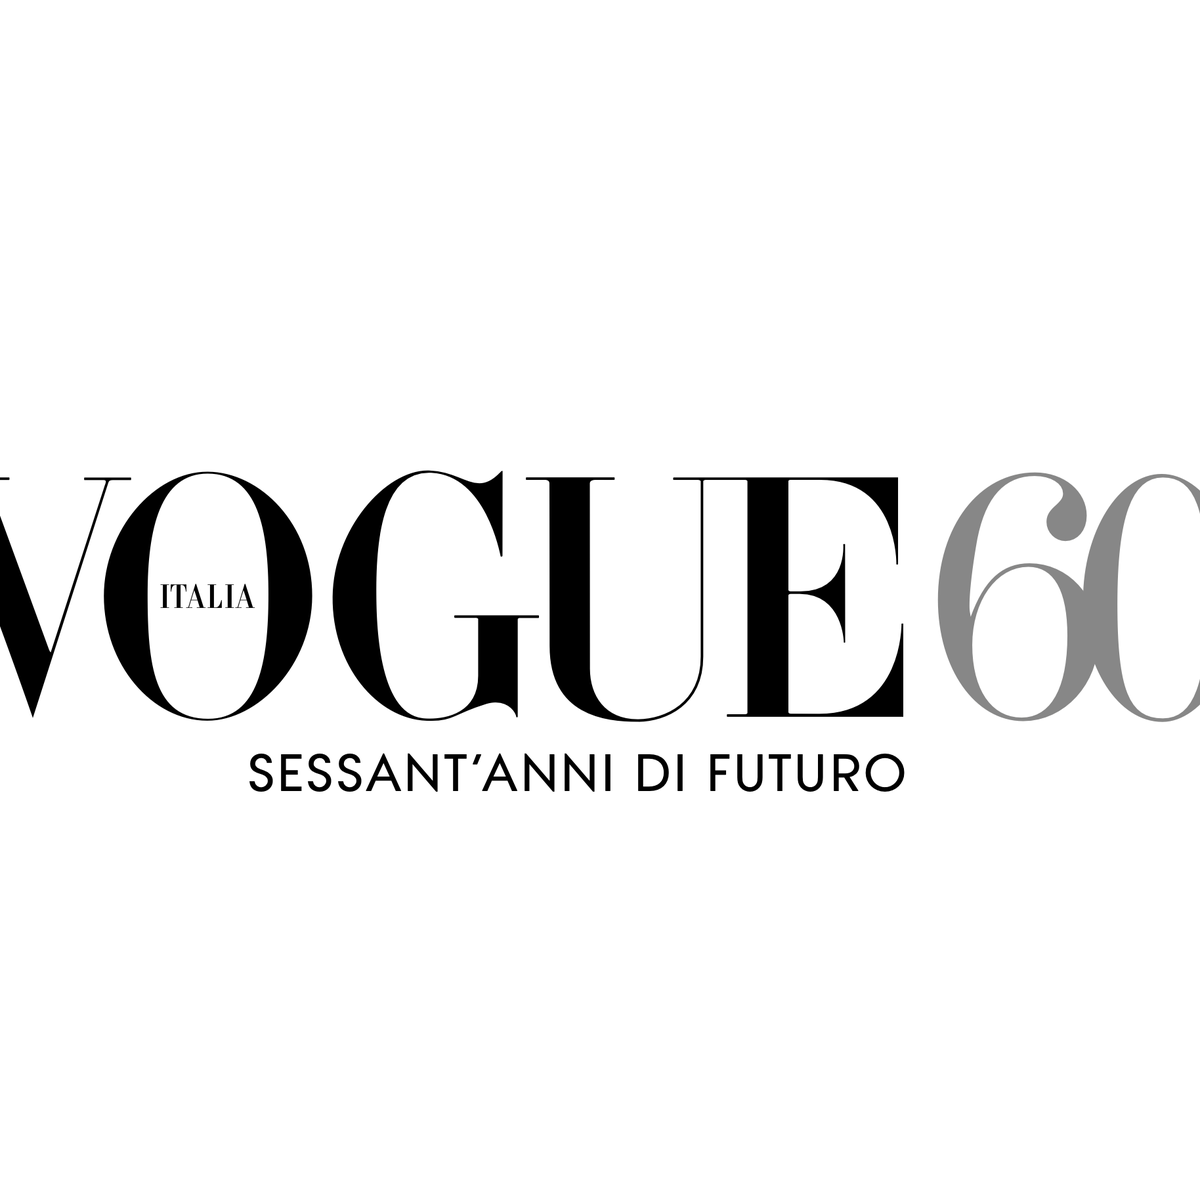 Vogue 60: sessant'anni di futuro, moda e rivoluzioni con una serie di iniziative e un evento a settembre